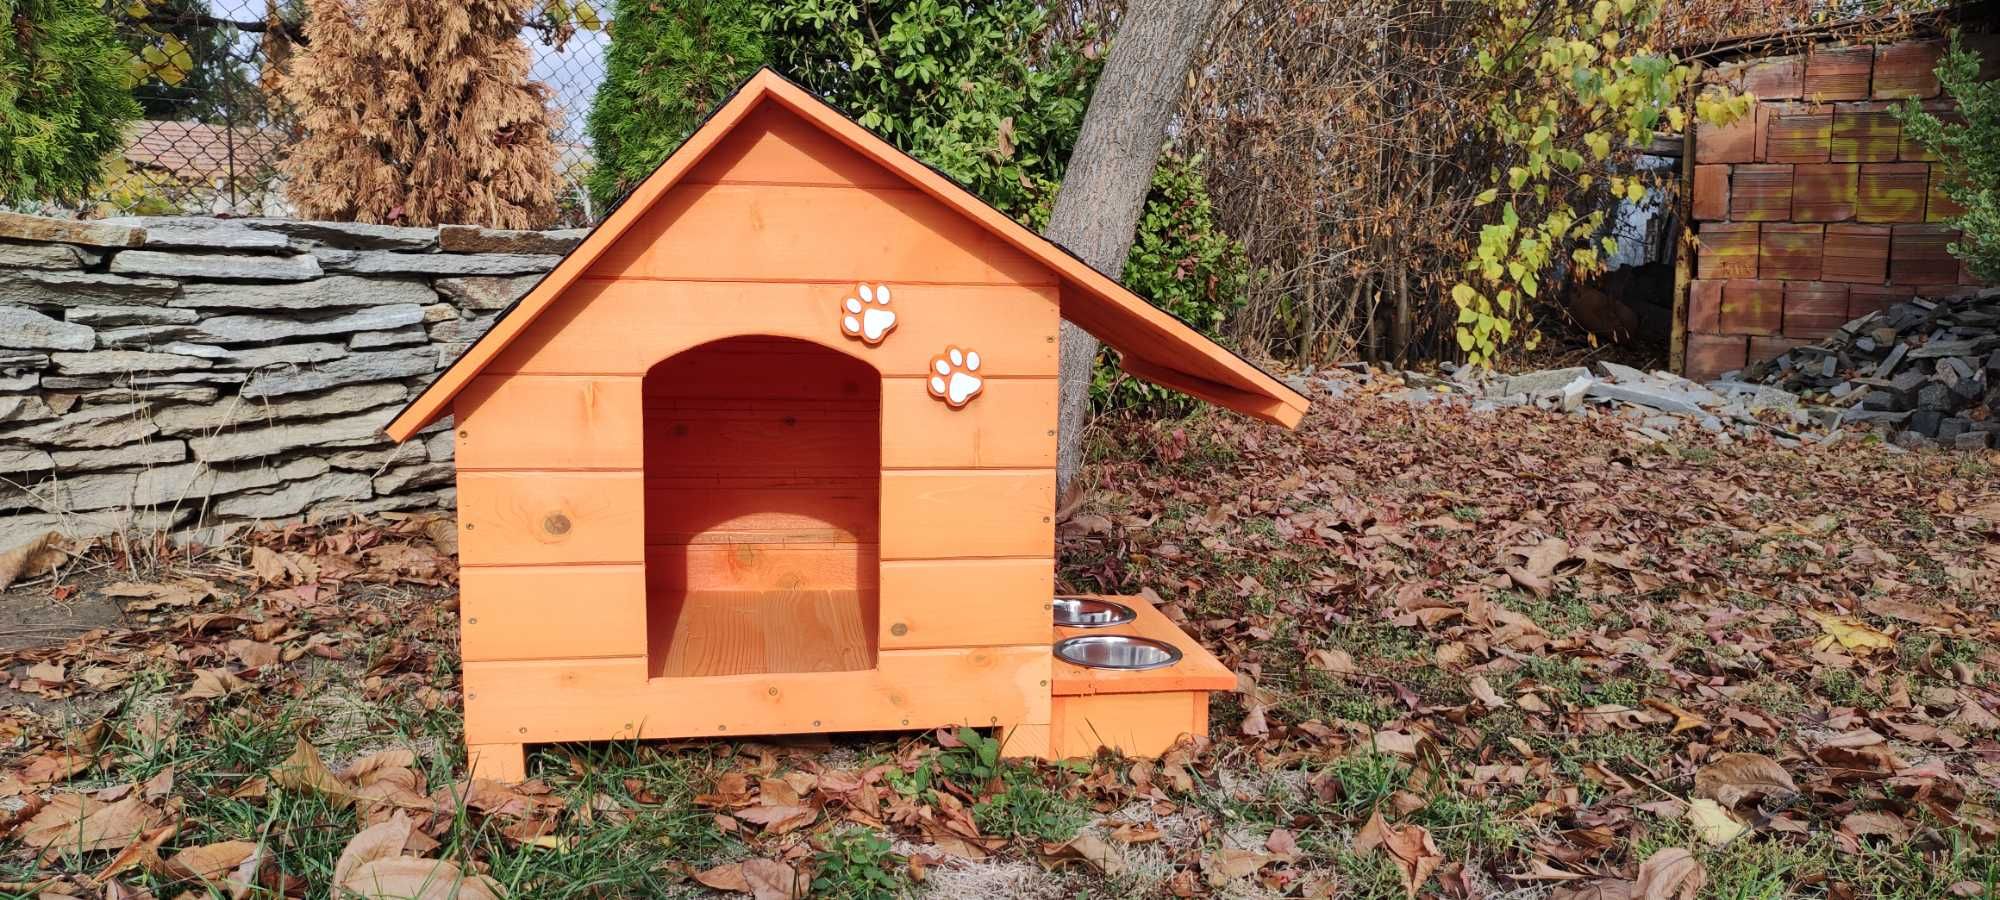 Къща за куче със стряха+купи;Колиба за кучета;Къщи за кученца-Оранжев